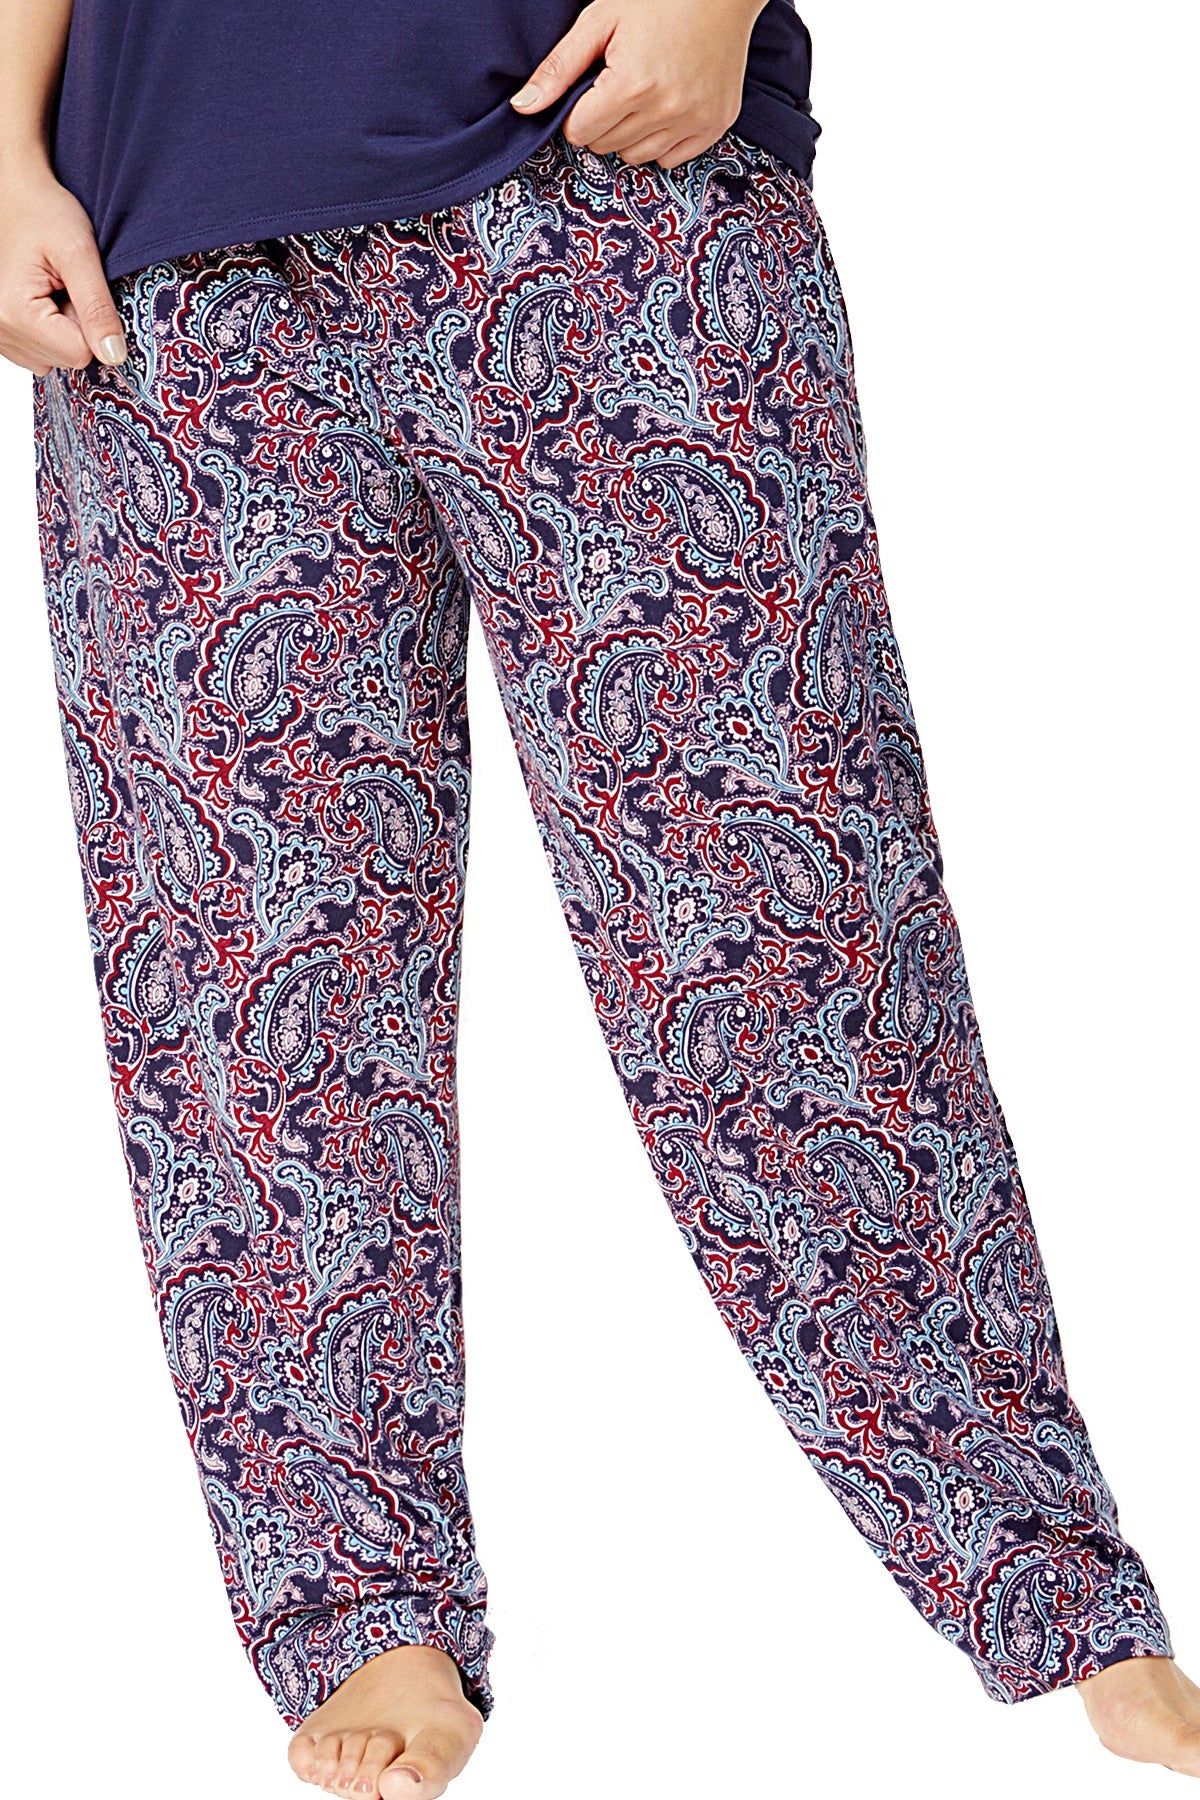 Nautica PLUS Navy/Paisley Stretch-Jersey Pajama Pant